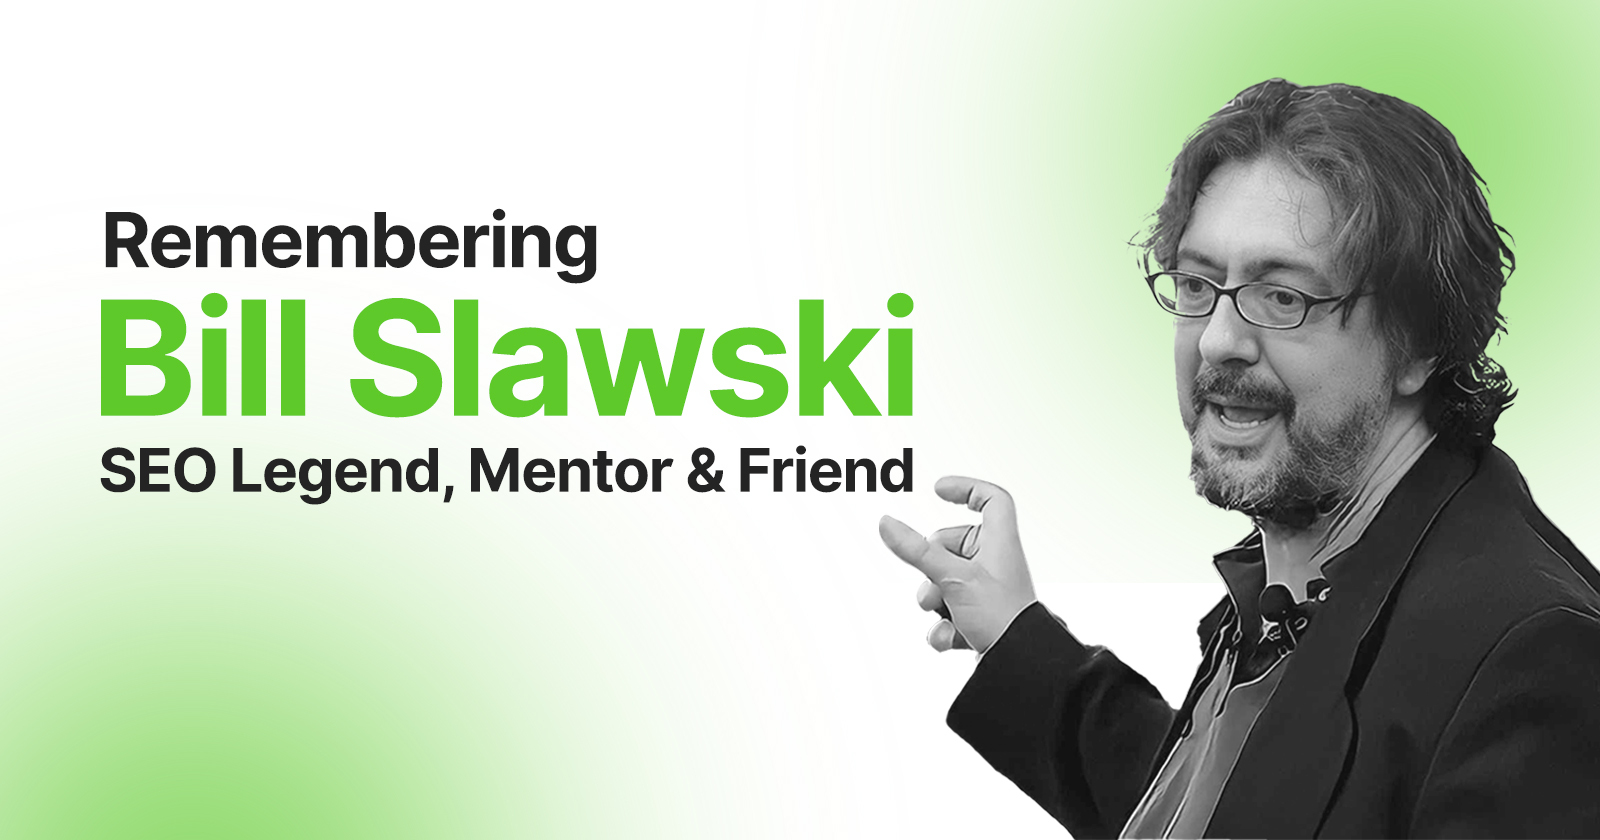 In Memory of Bill Slawski